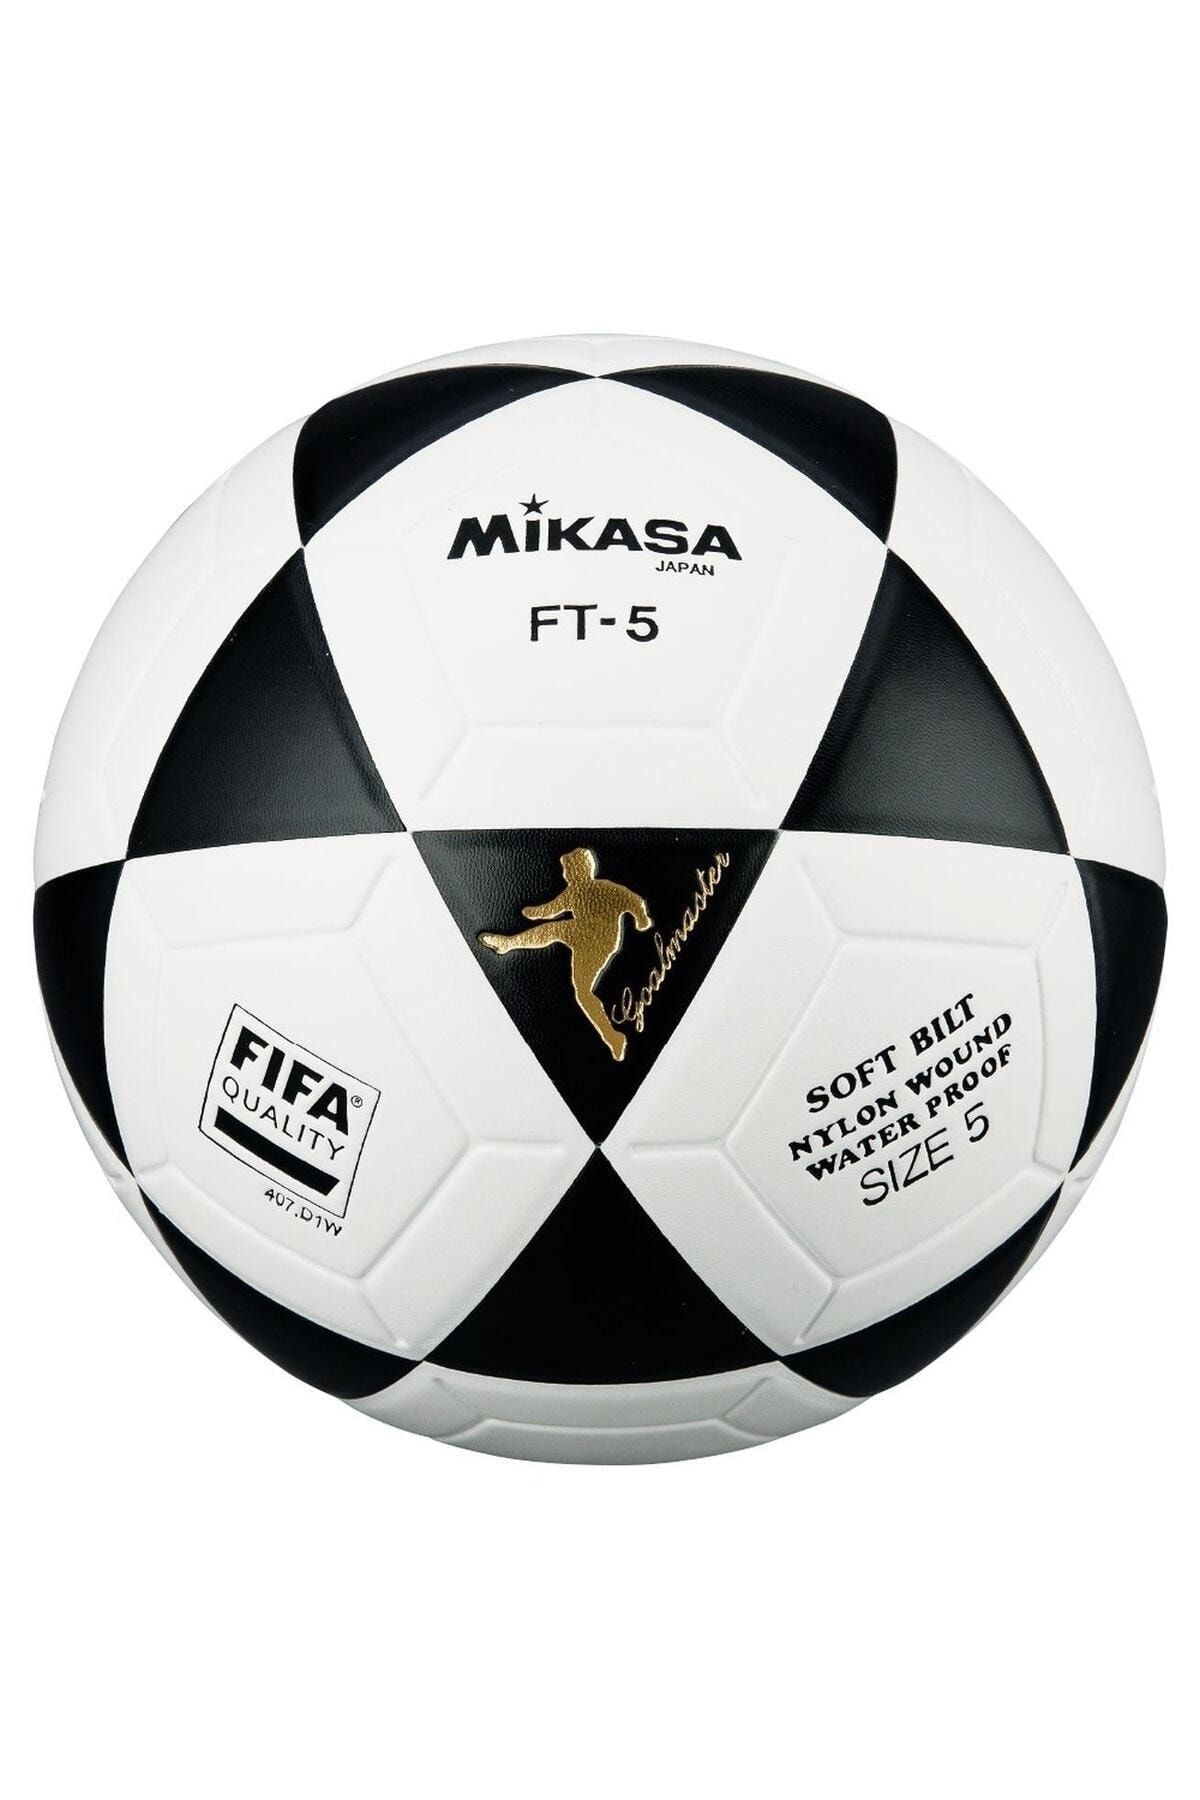 MIKASA Ft-5 W/fifa Logo Sentet. Deri Futbol Topu